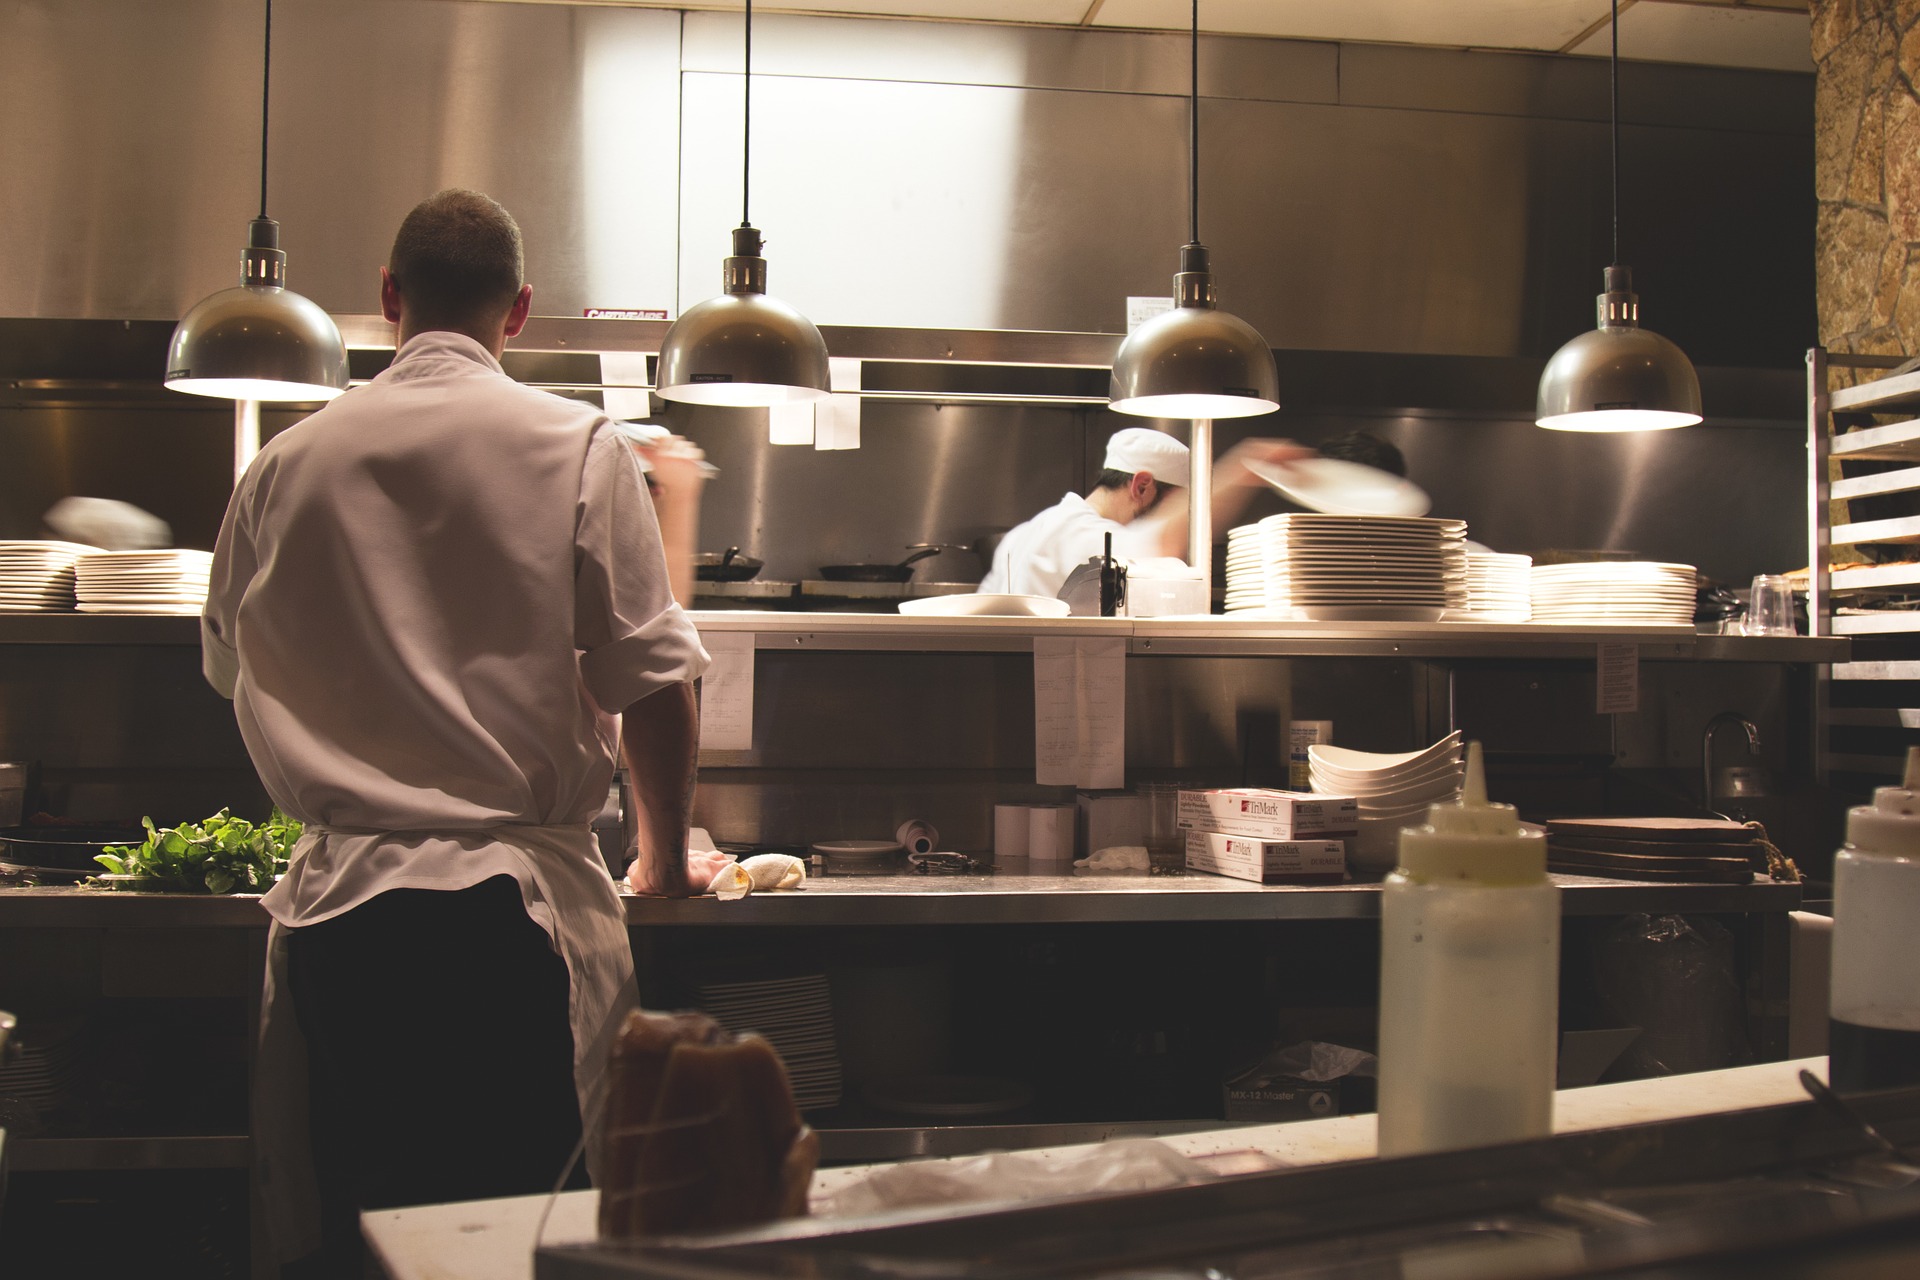 Interno cucina e chef fotografato di spalle